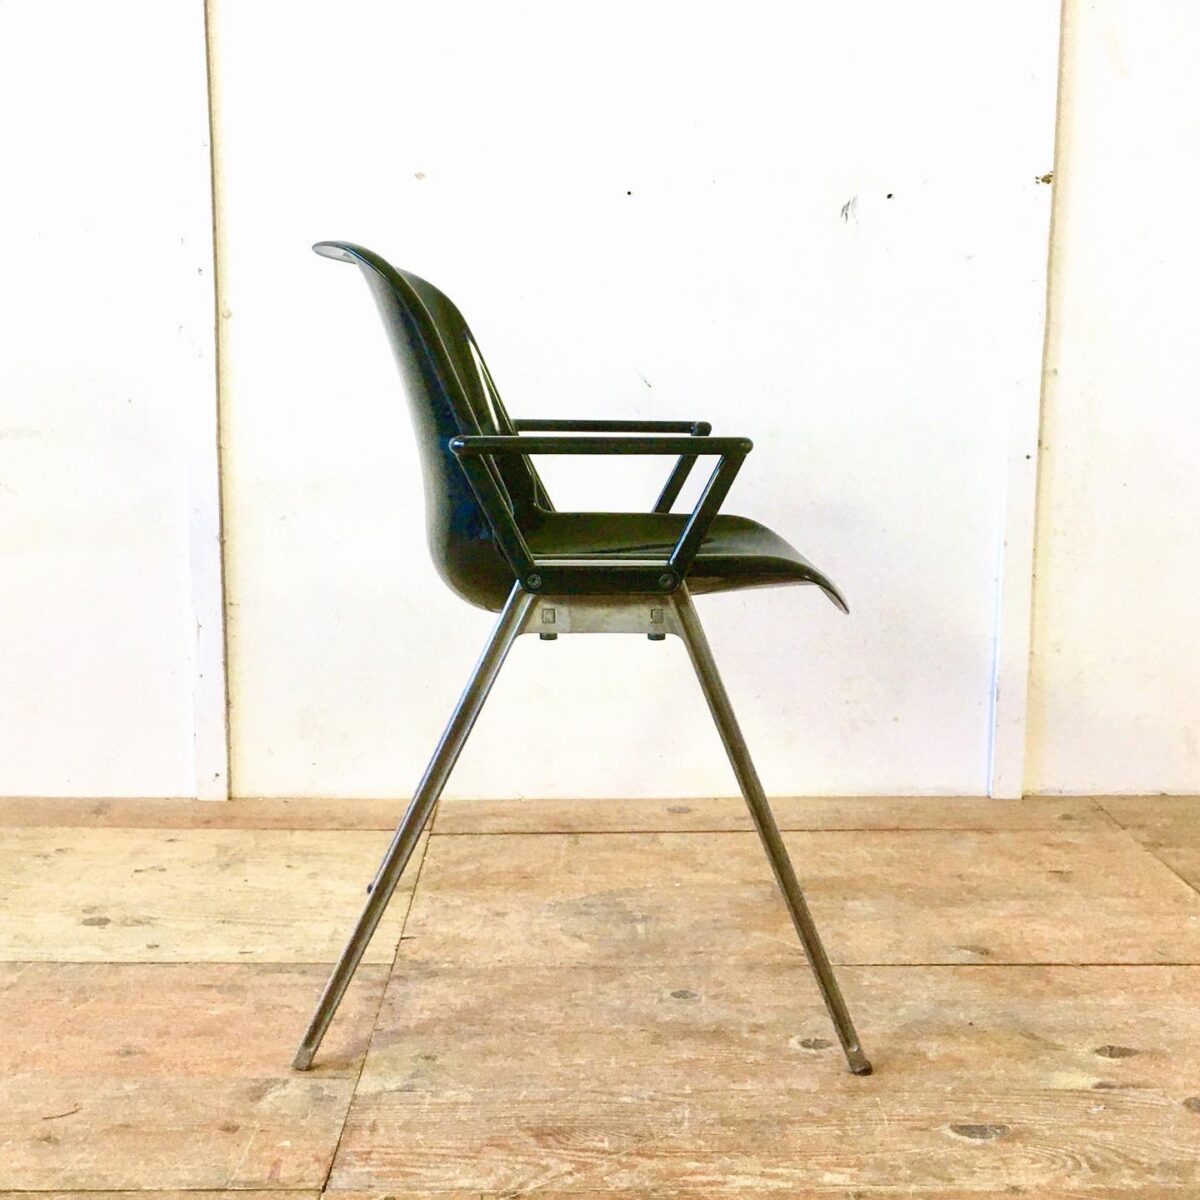 Schalensitz Stühle von Burkhard vogtherr Design Stapelstühle vintage Gartenstühle designklassiker fieberglas